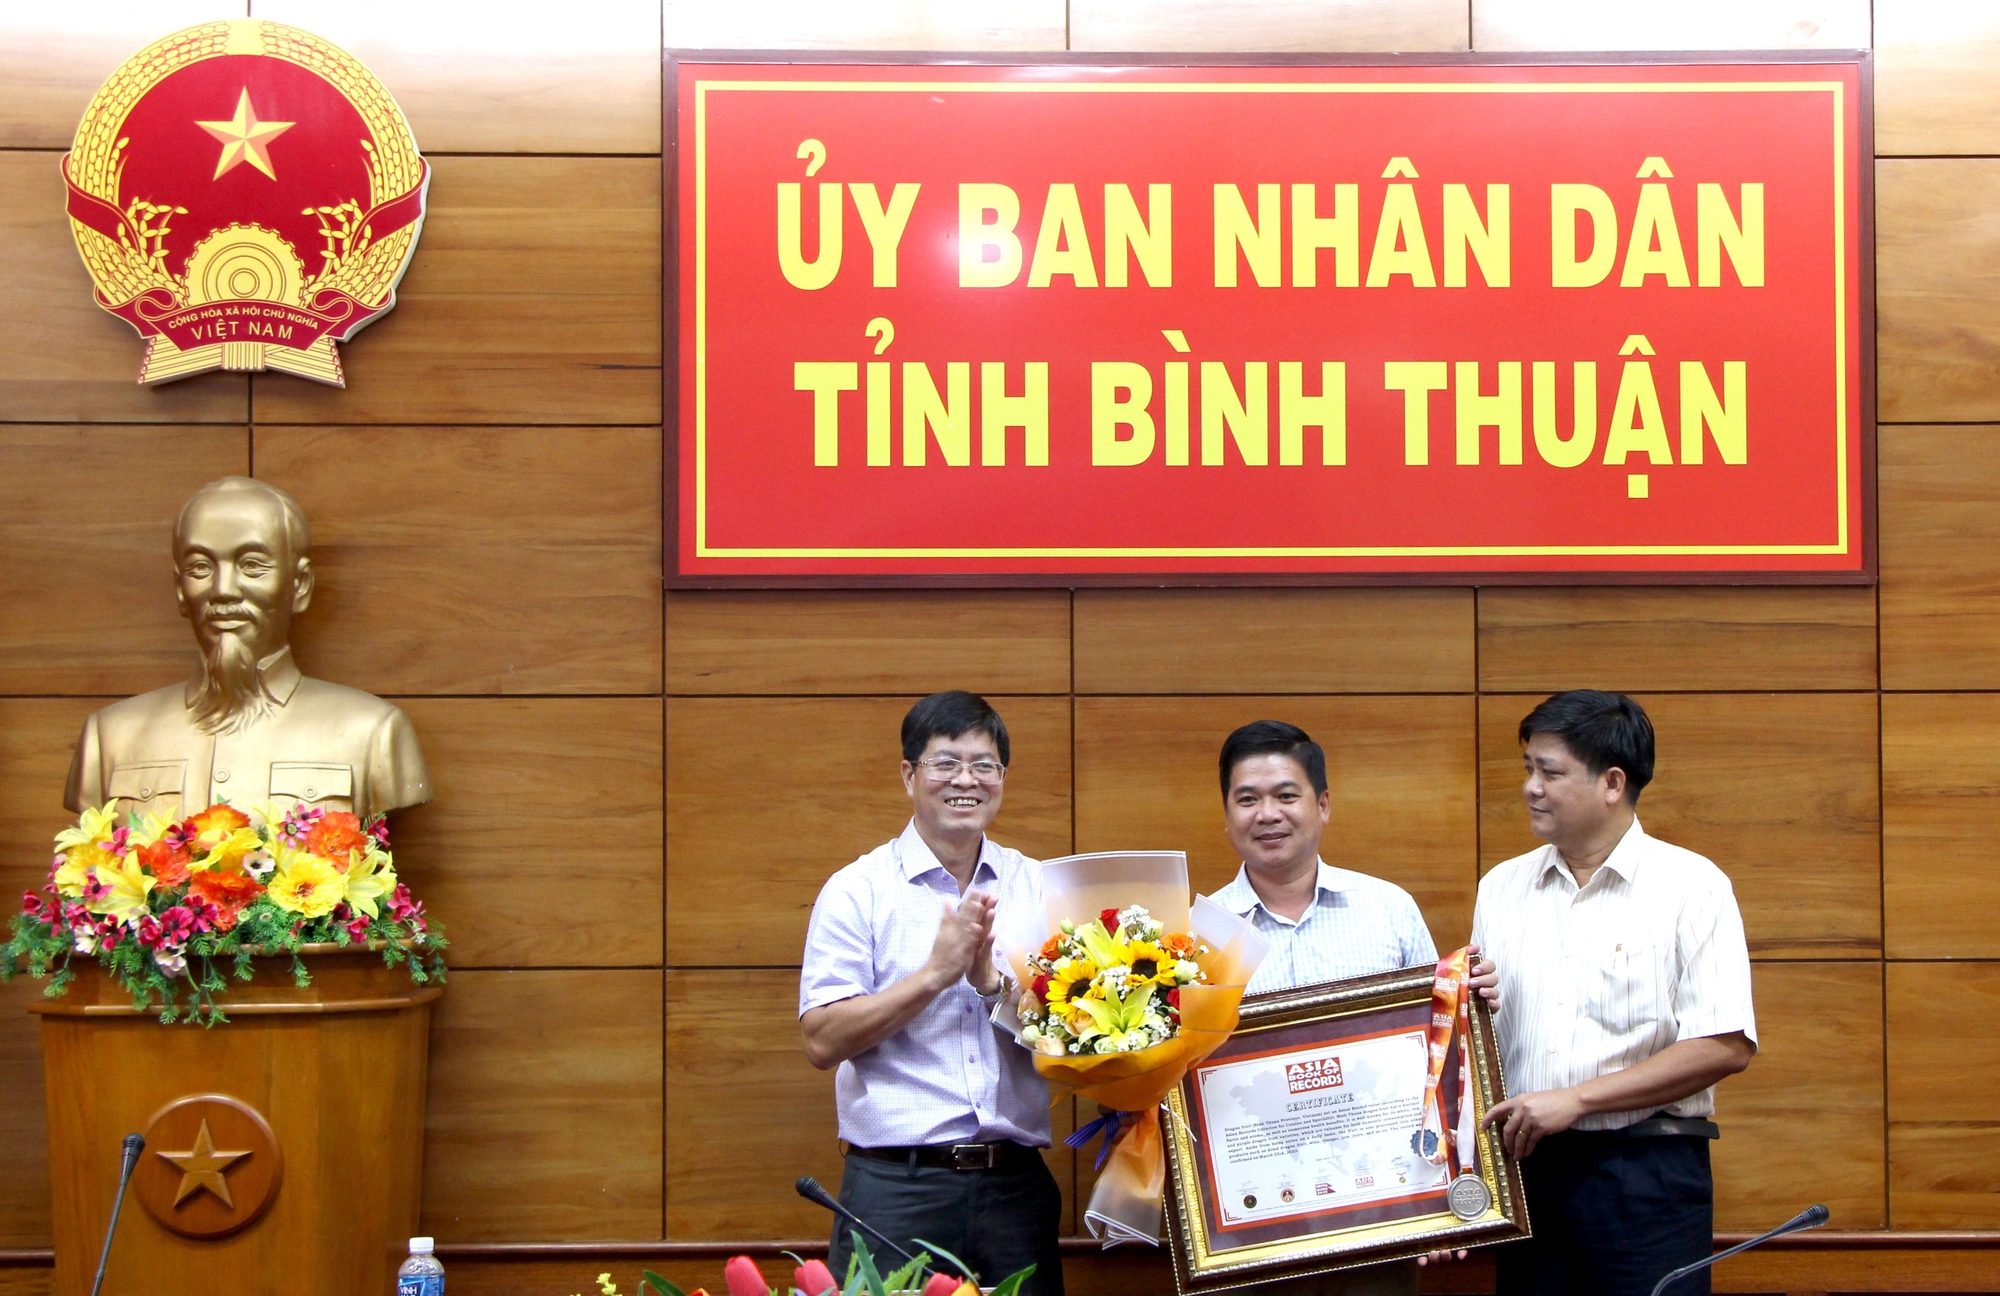 Thanh long Bình Thuận vinh dự đón nhận Bằng Kỷ lục Châu Á - Ảnh 1.